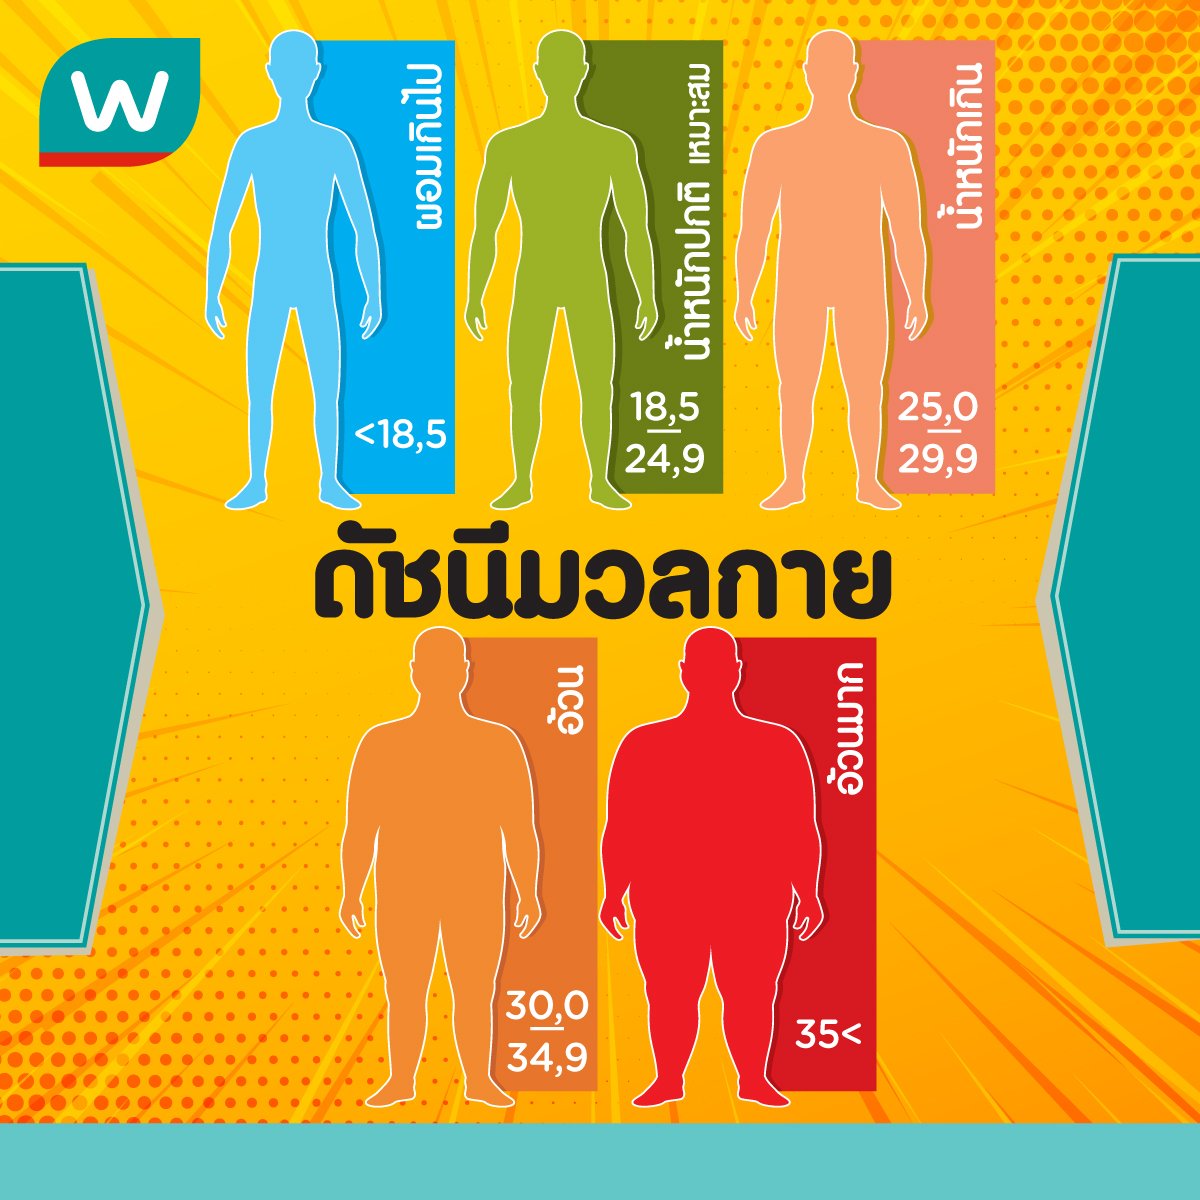 Watsons Thailand On Twitter: 